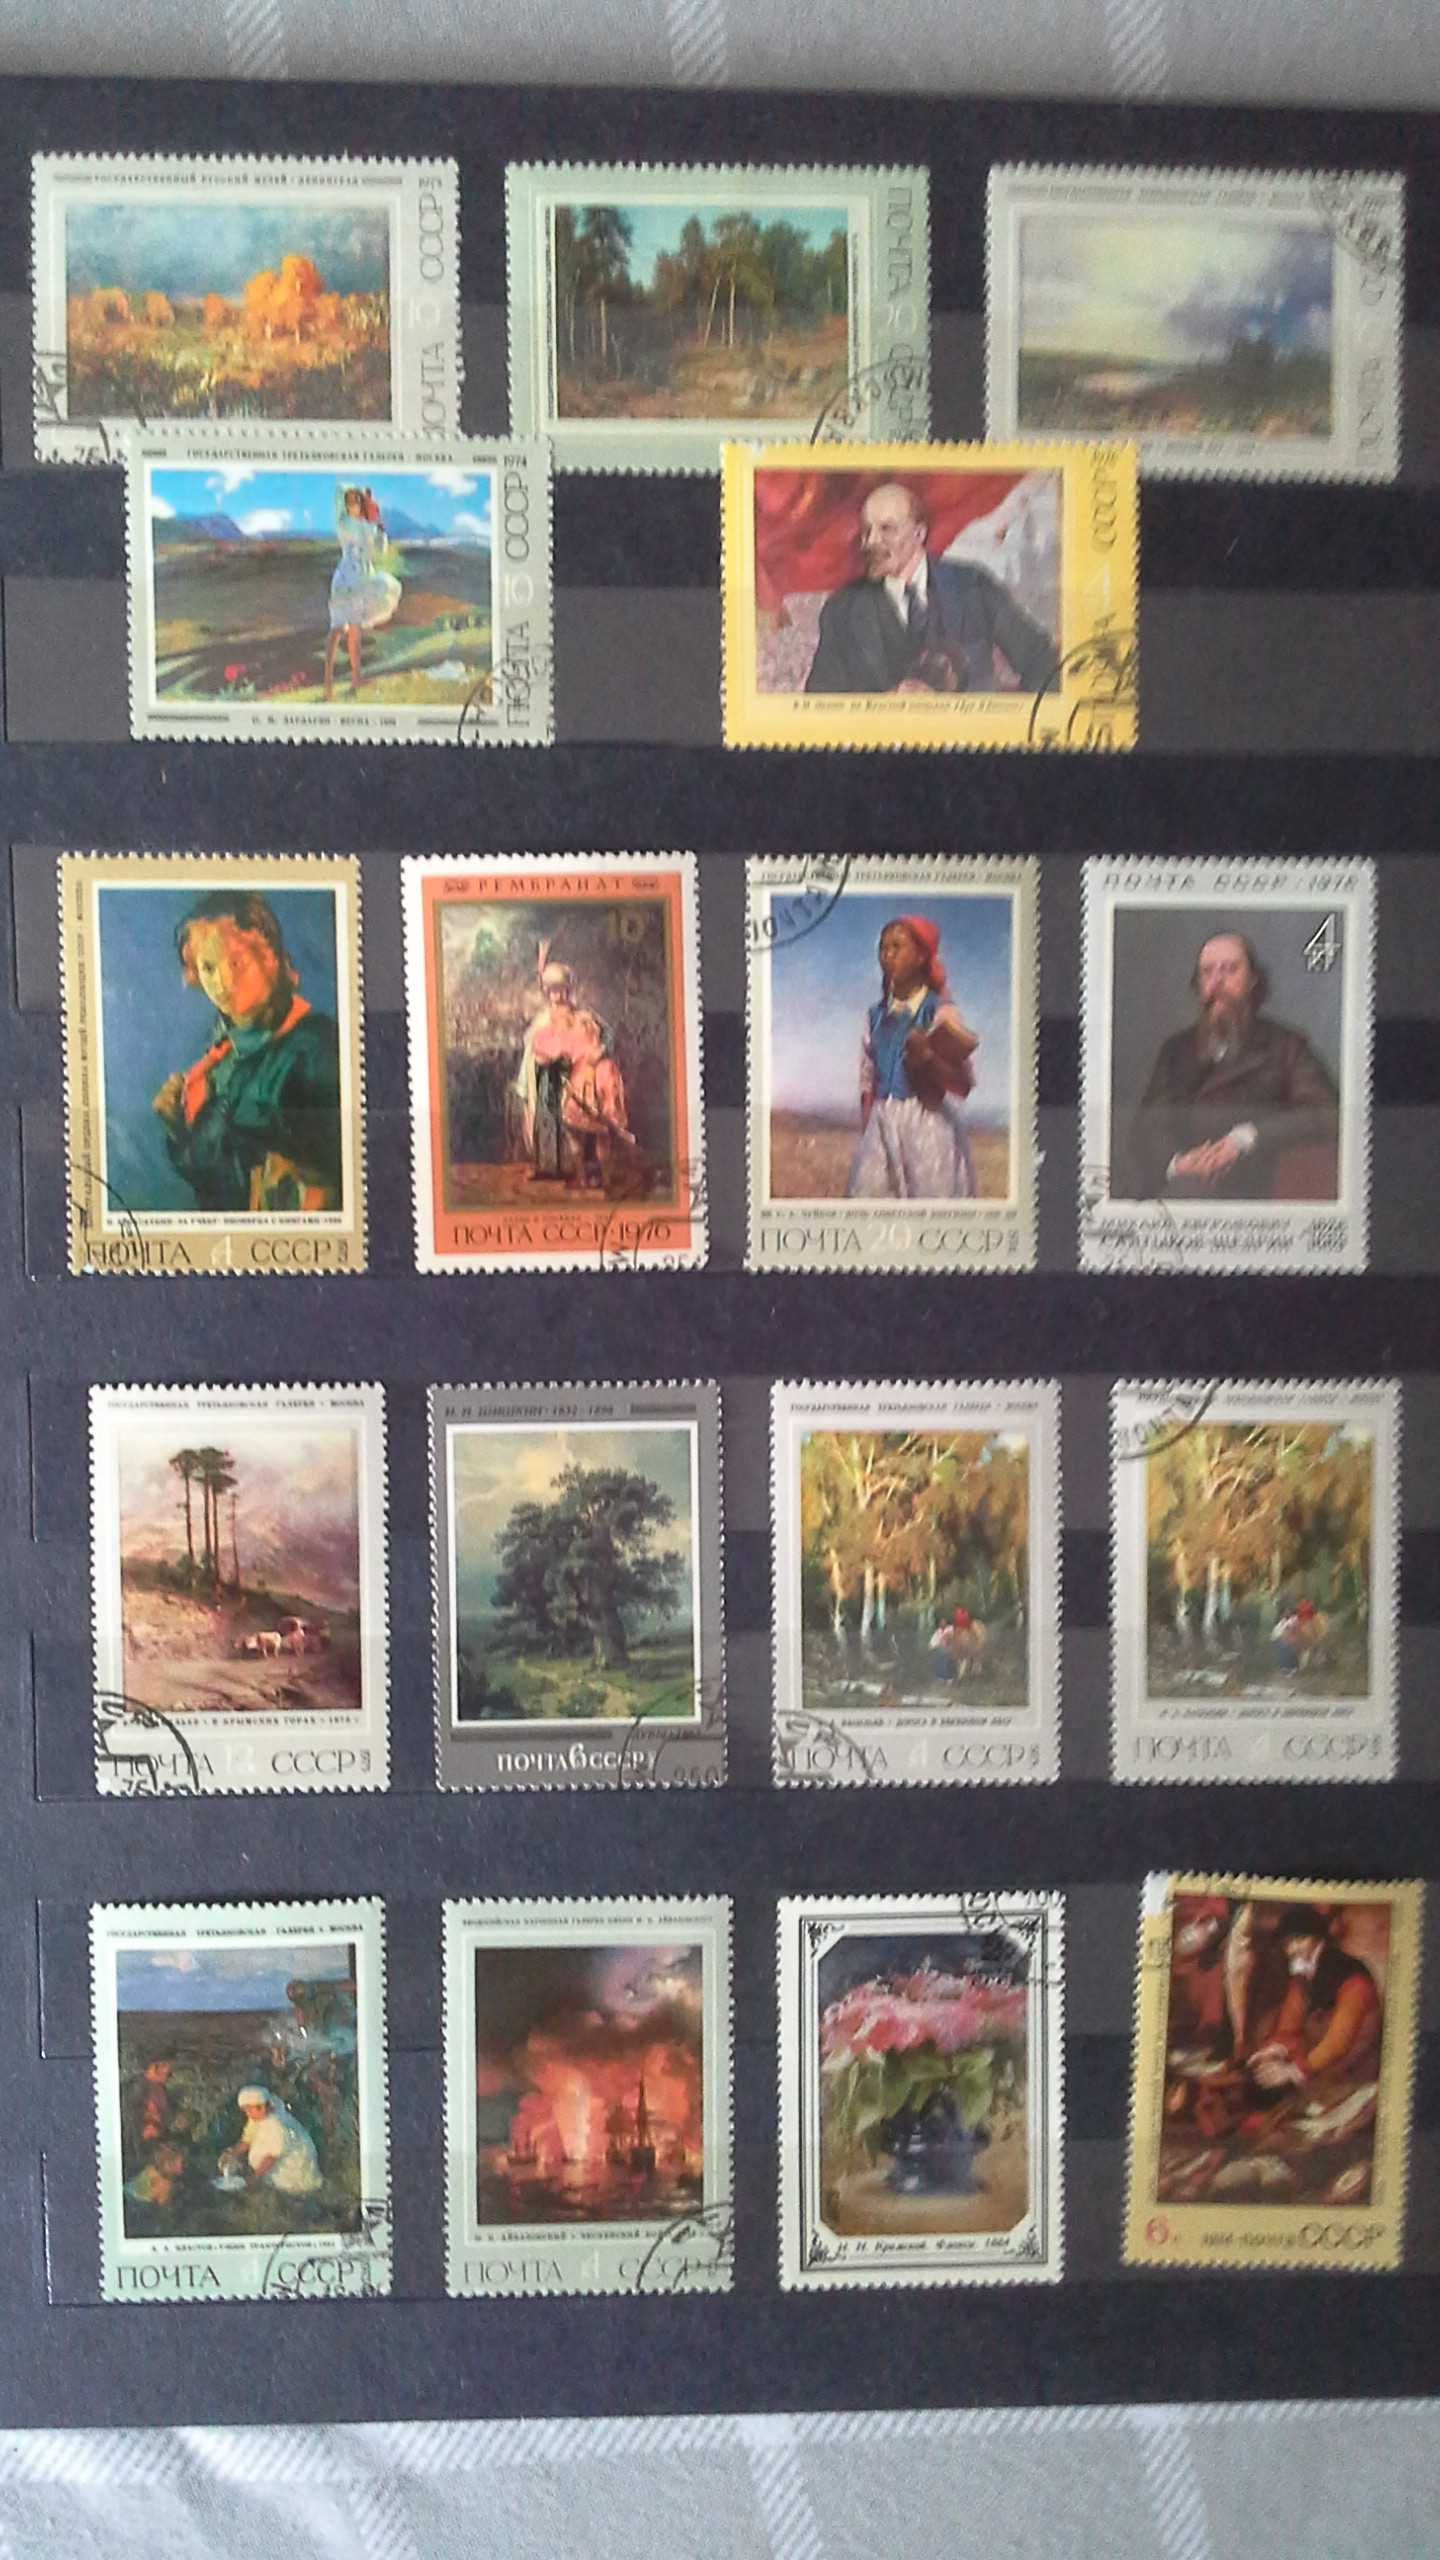 Znaczki pocztowe CCCP oraz Polska - znaczek pocztowy